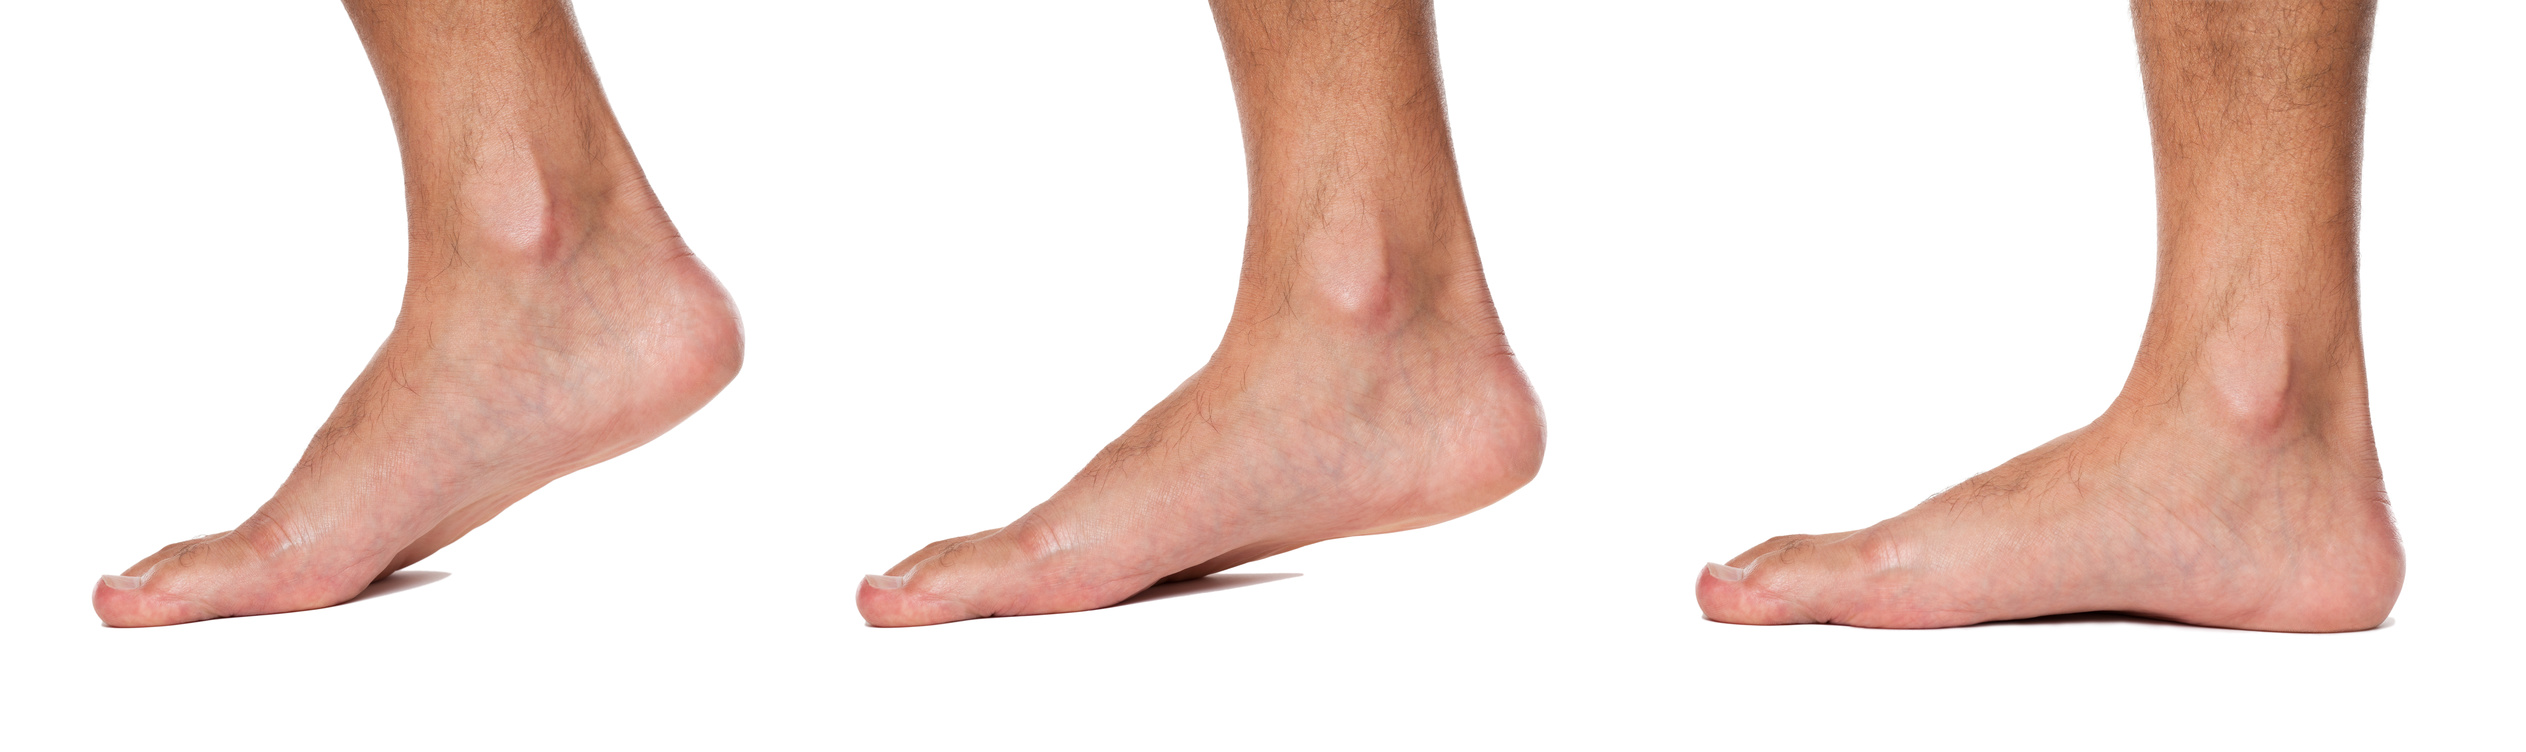 Fisioterapia en las alteraciones ortopédicas del pie - San Sebastián de los  Reyes